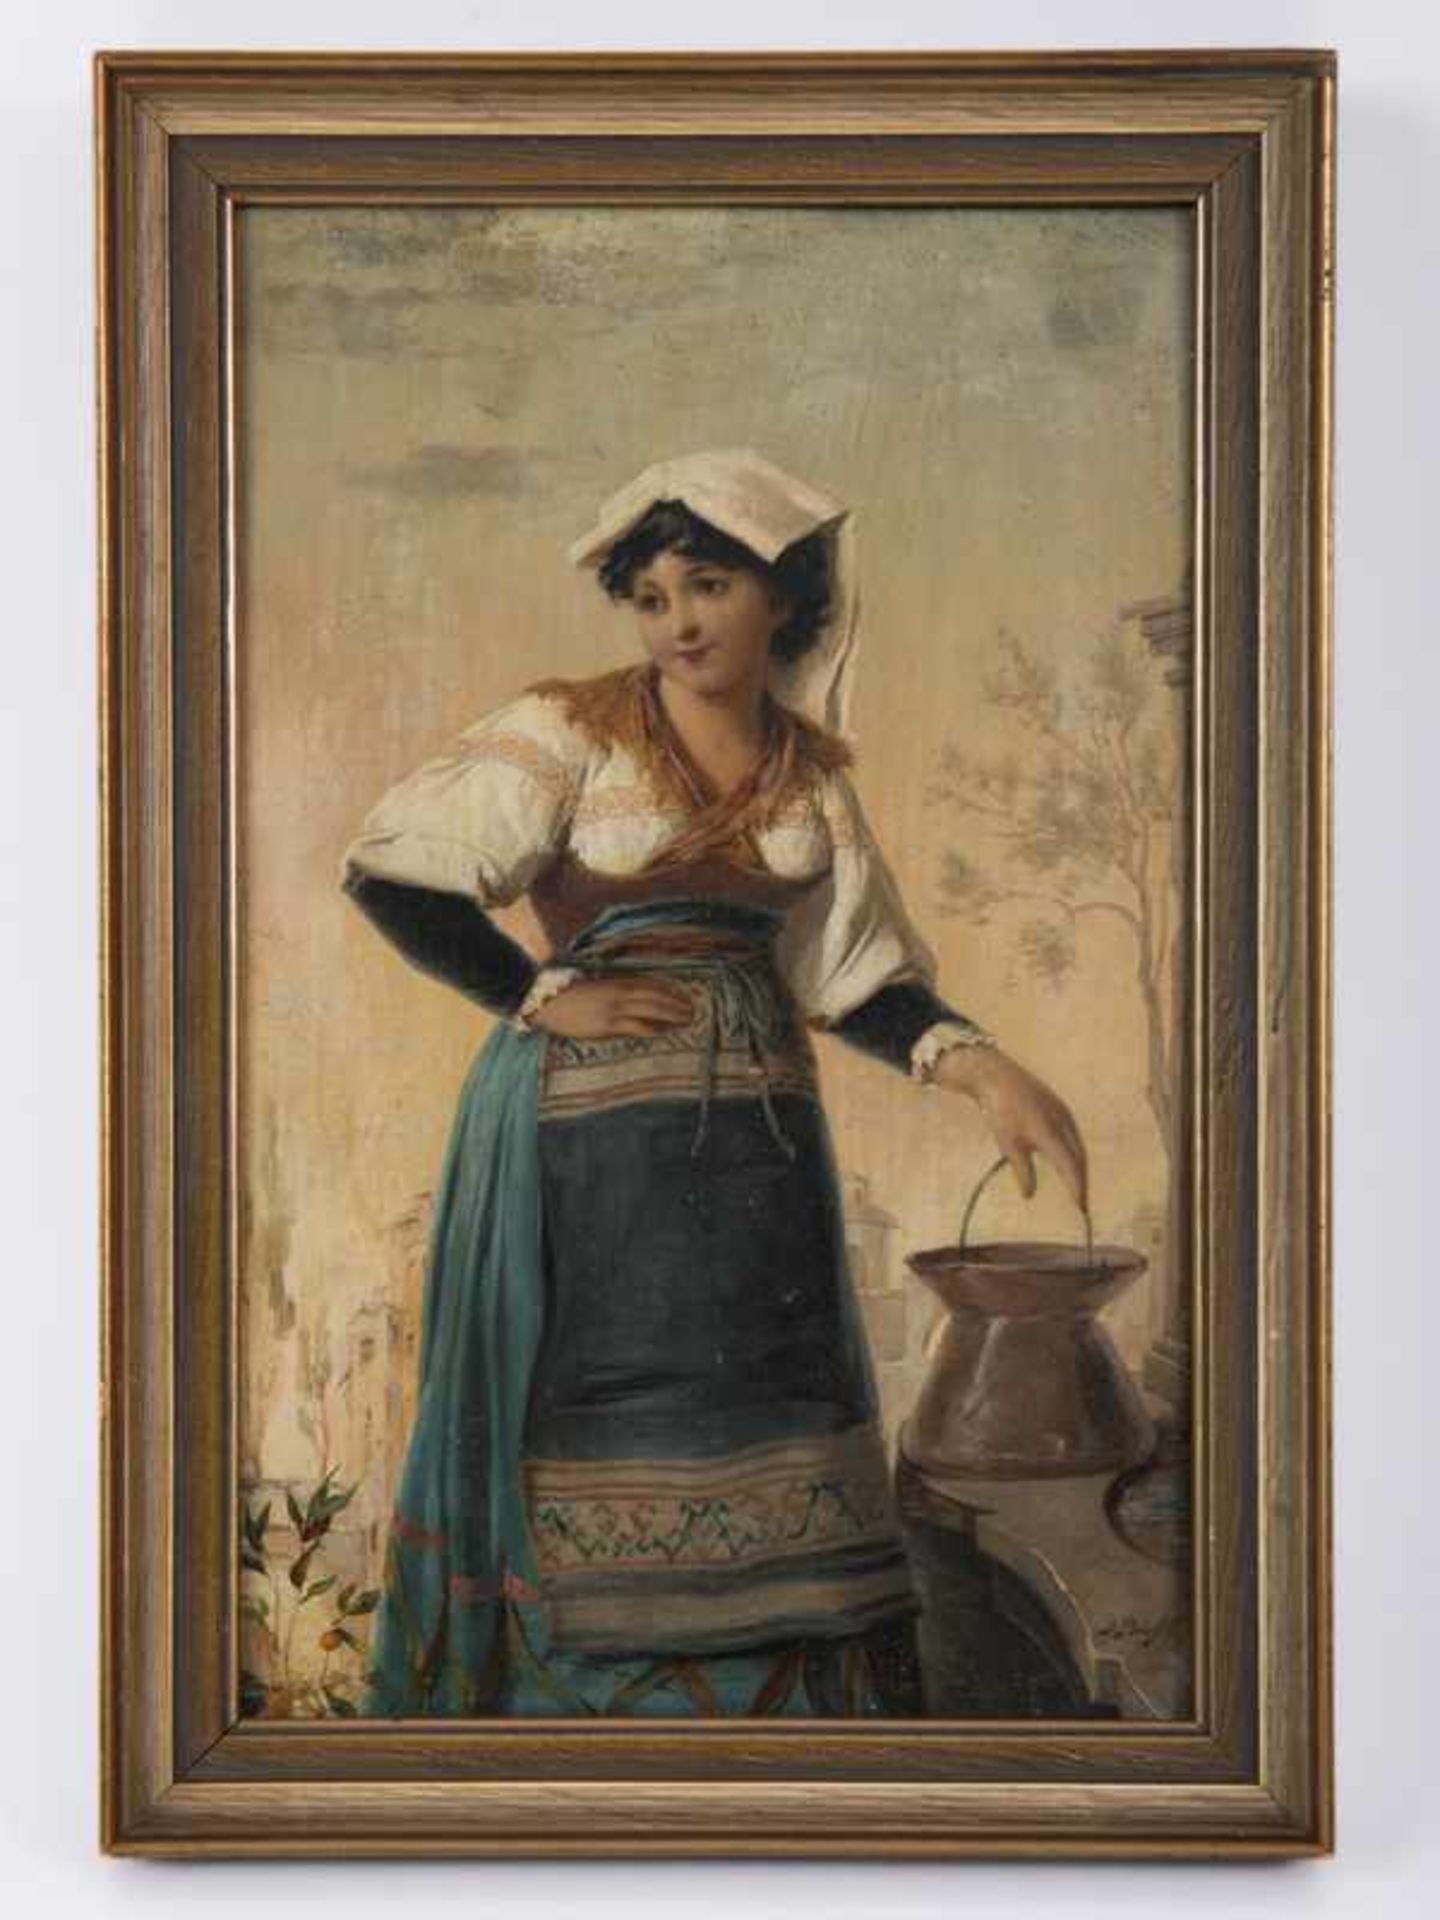 Büche, Josef (1848 - 1917). Öl auf Holz; junge Italienerin am Brunnen; kleines, nahezu